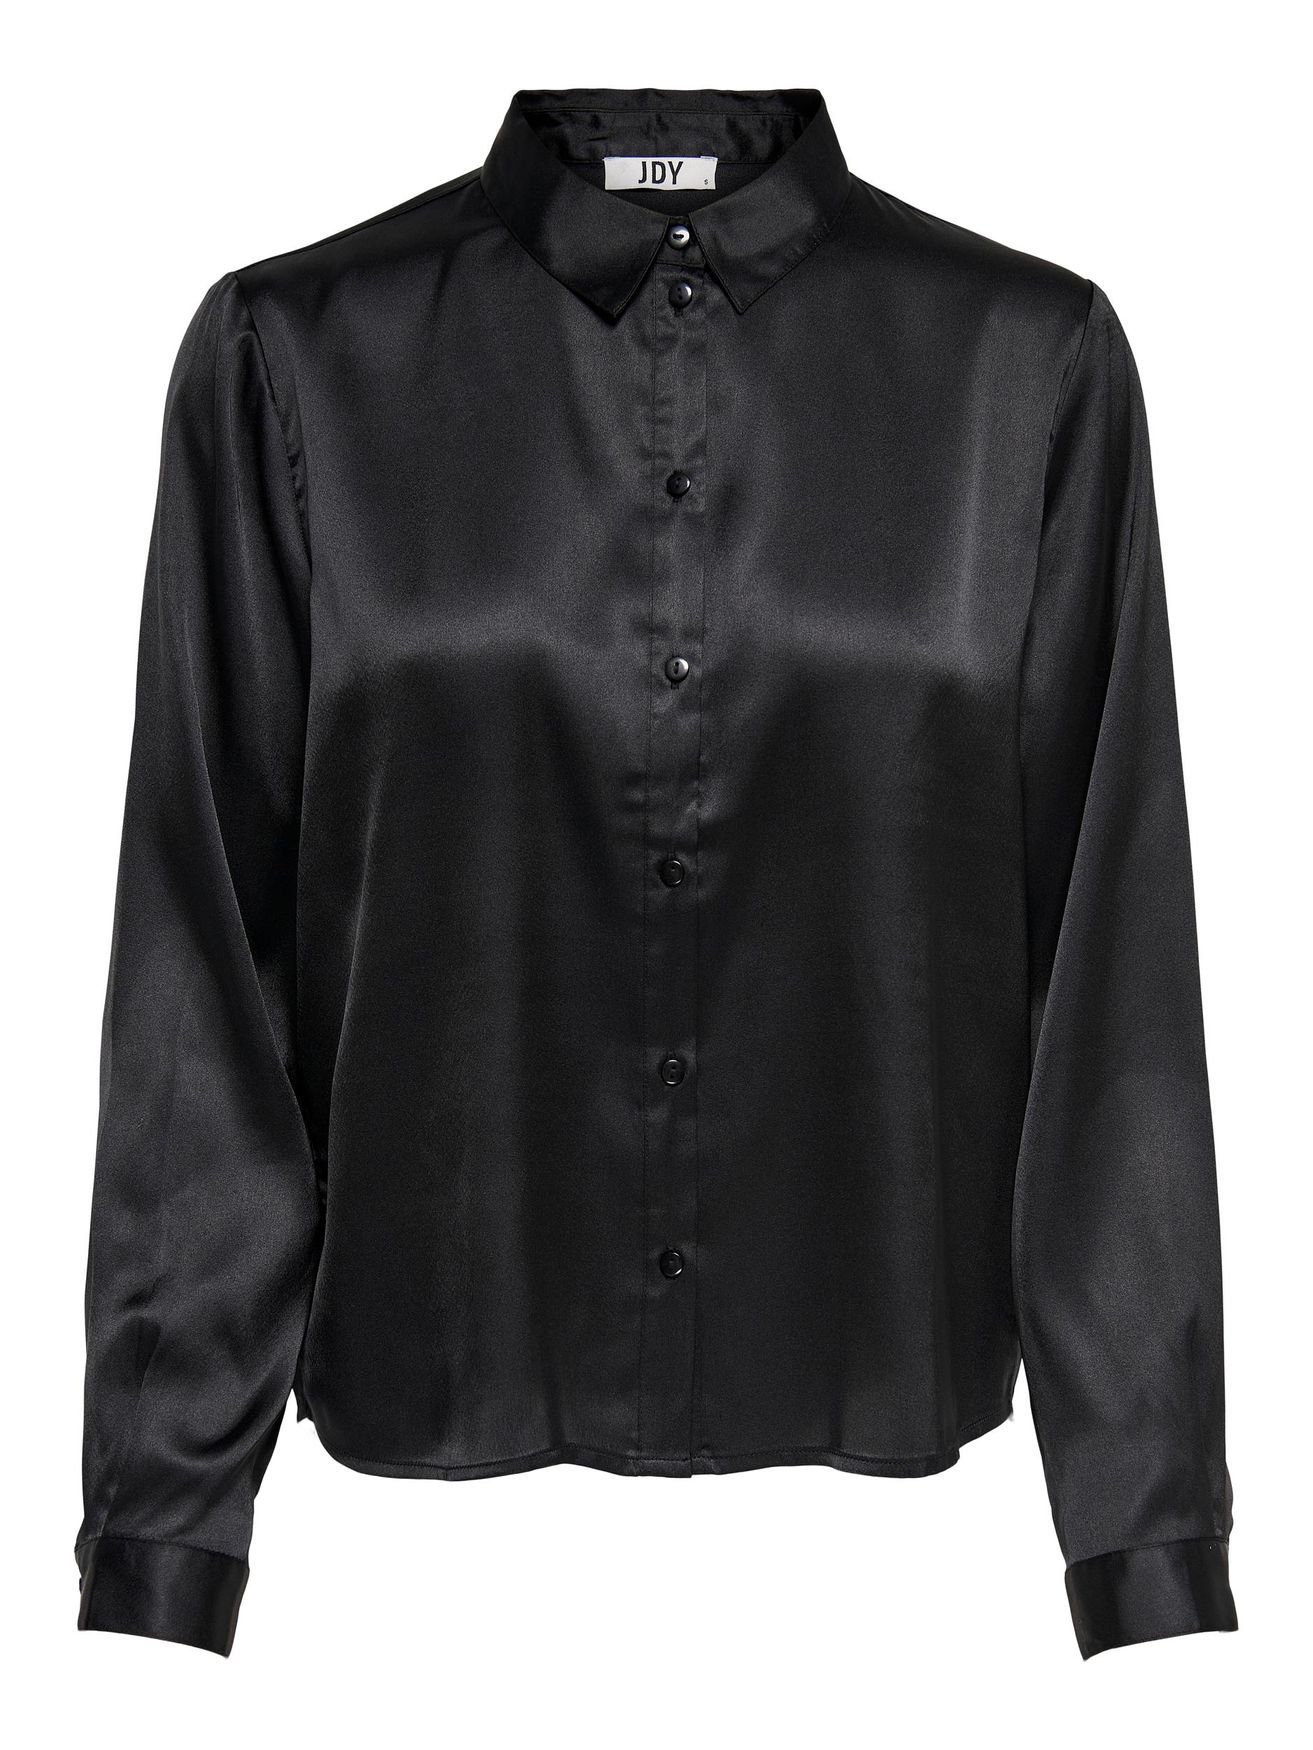 JACQUELINE de YONG Blusenshirt in JDYFIFI Business Satin Tunika Elegante 4470 Schwarz Langarm Hemd Bluse